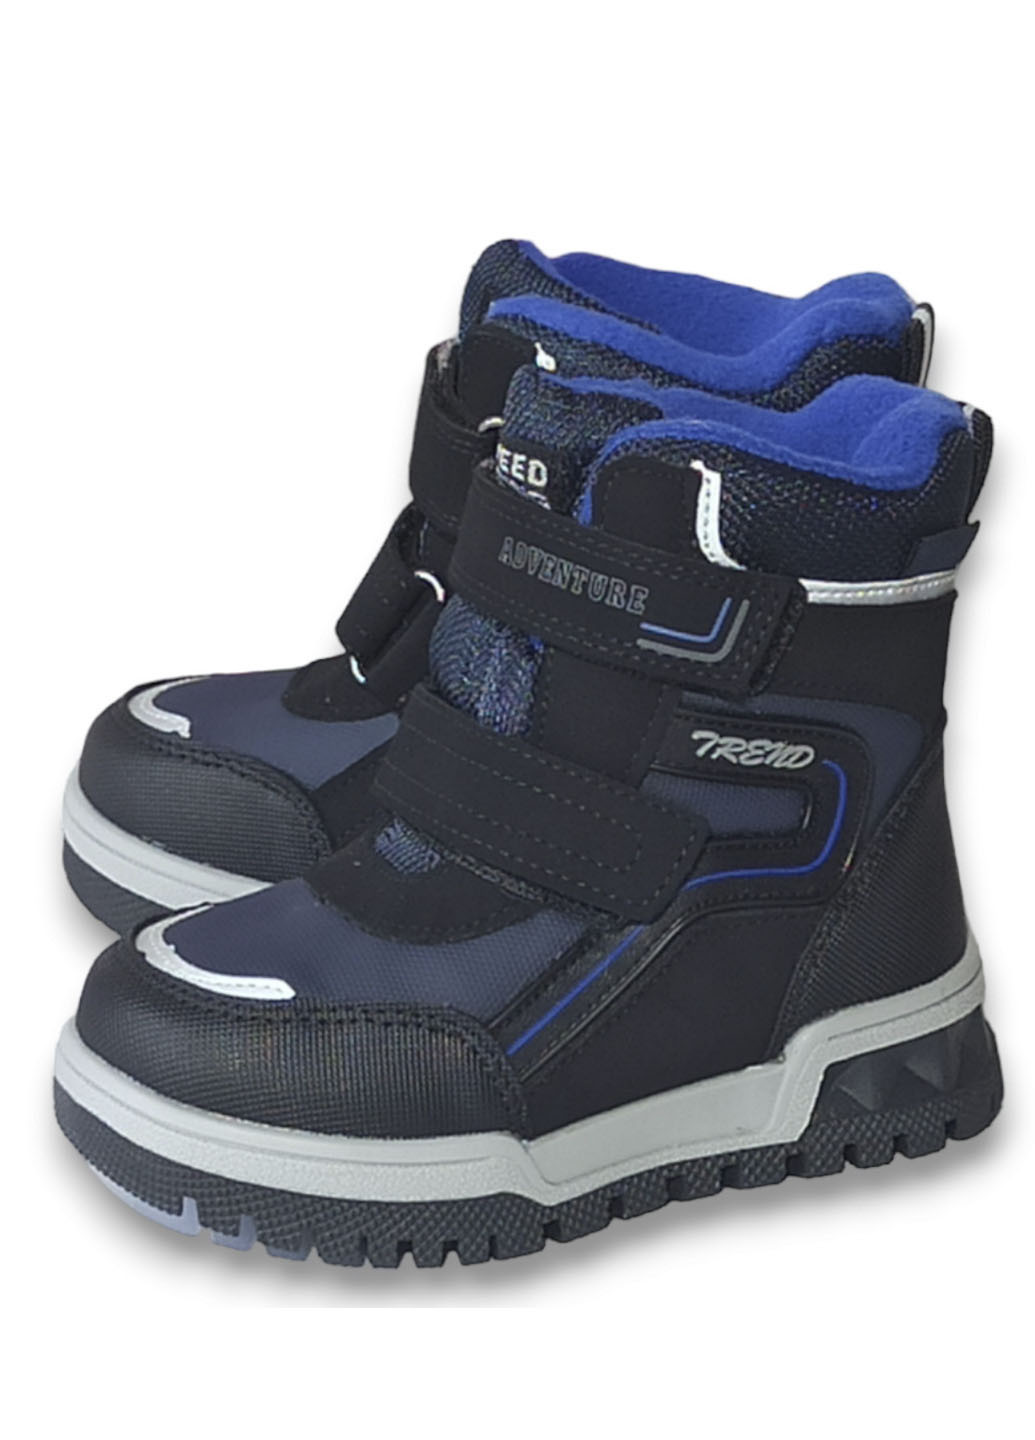 Синие повседневные зимние детские зимние ботинки для мальчика на овчине том м 10806д синие Tom.M